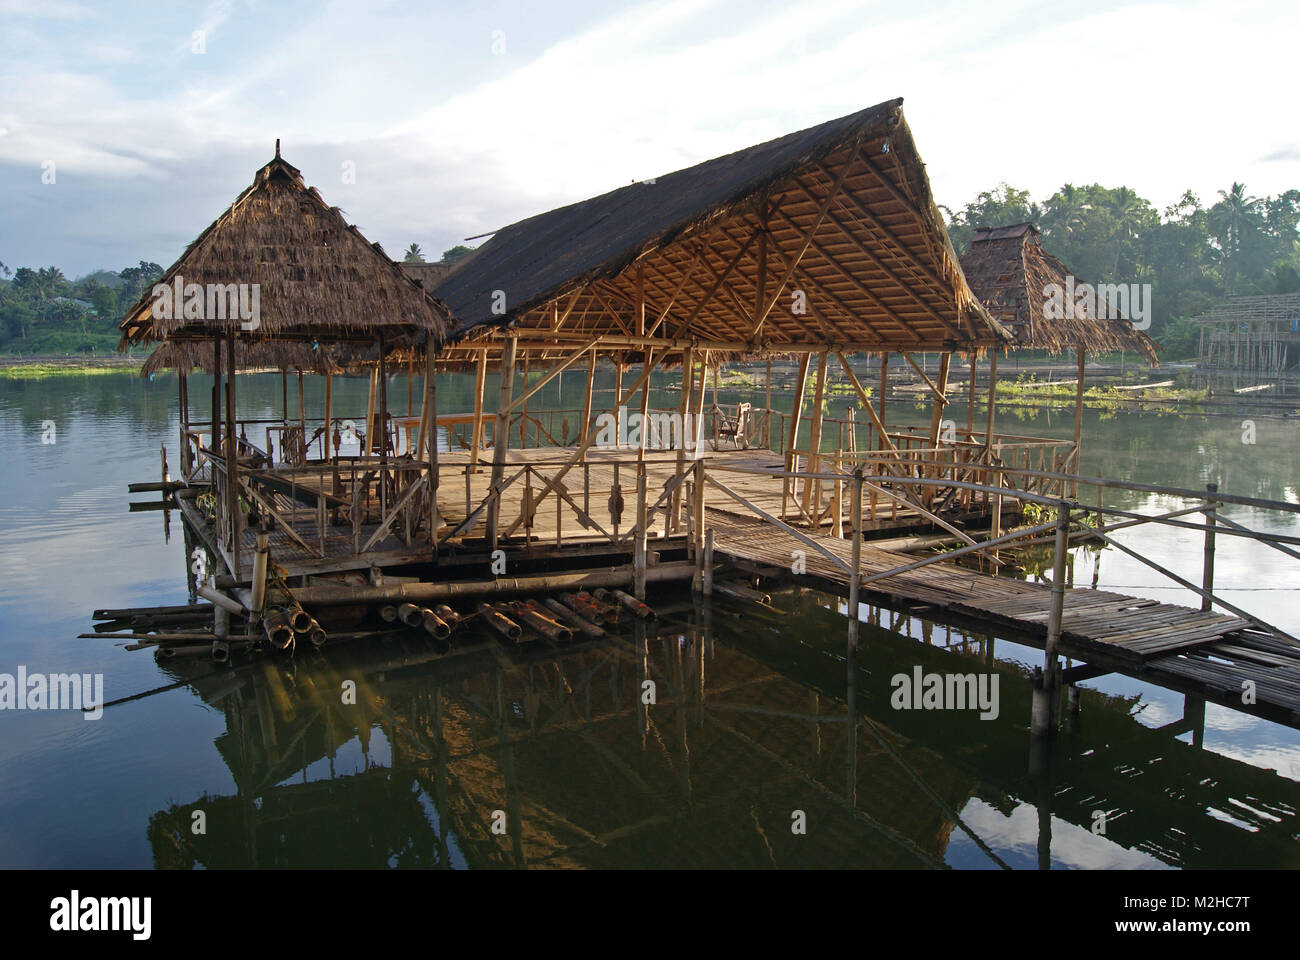 Floating Pavilion on Lake Sebu Stock Photo